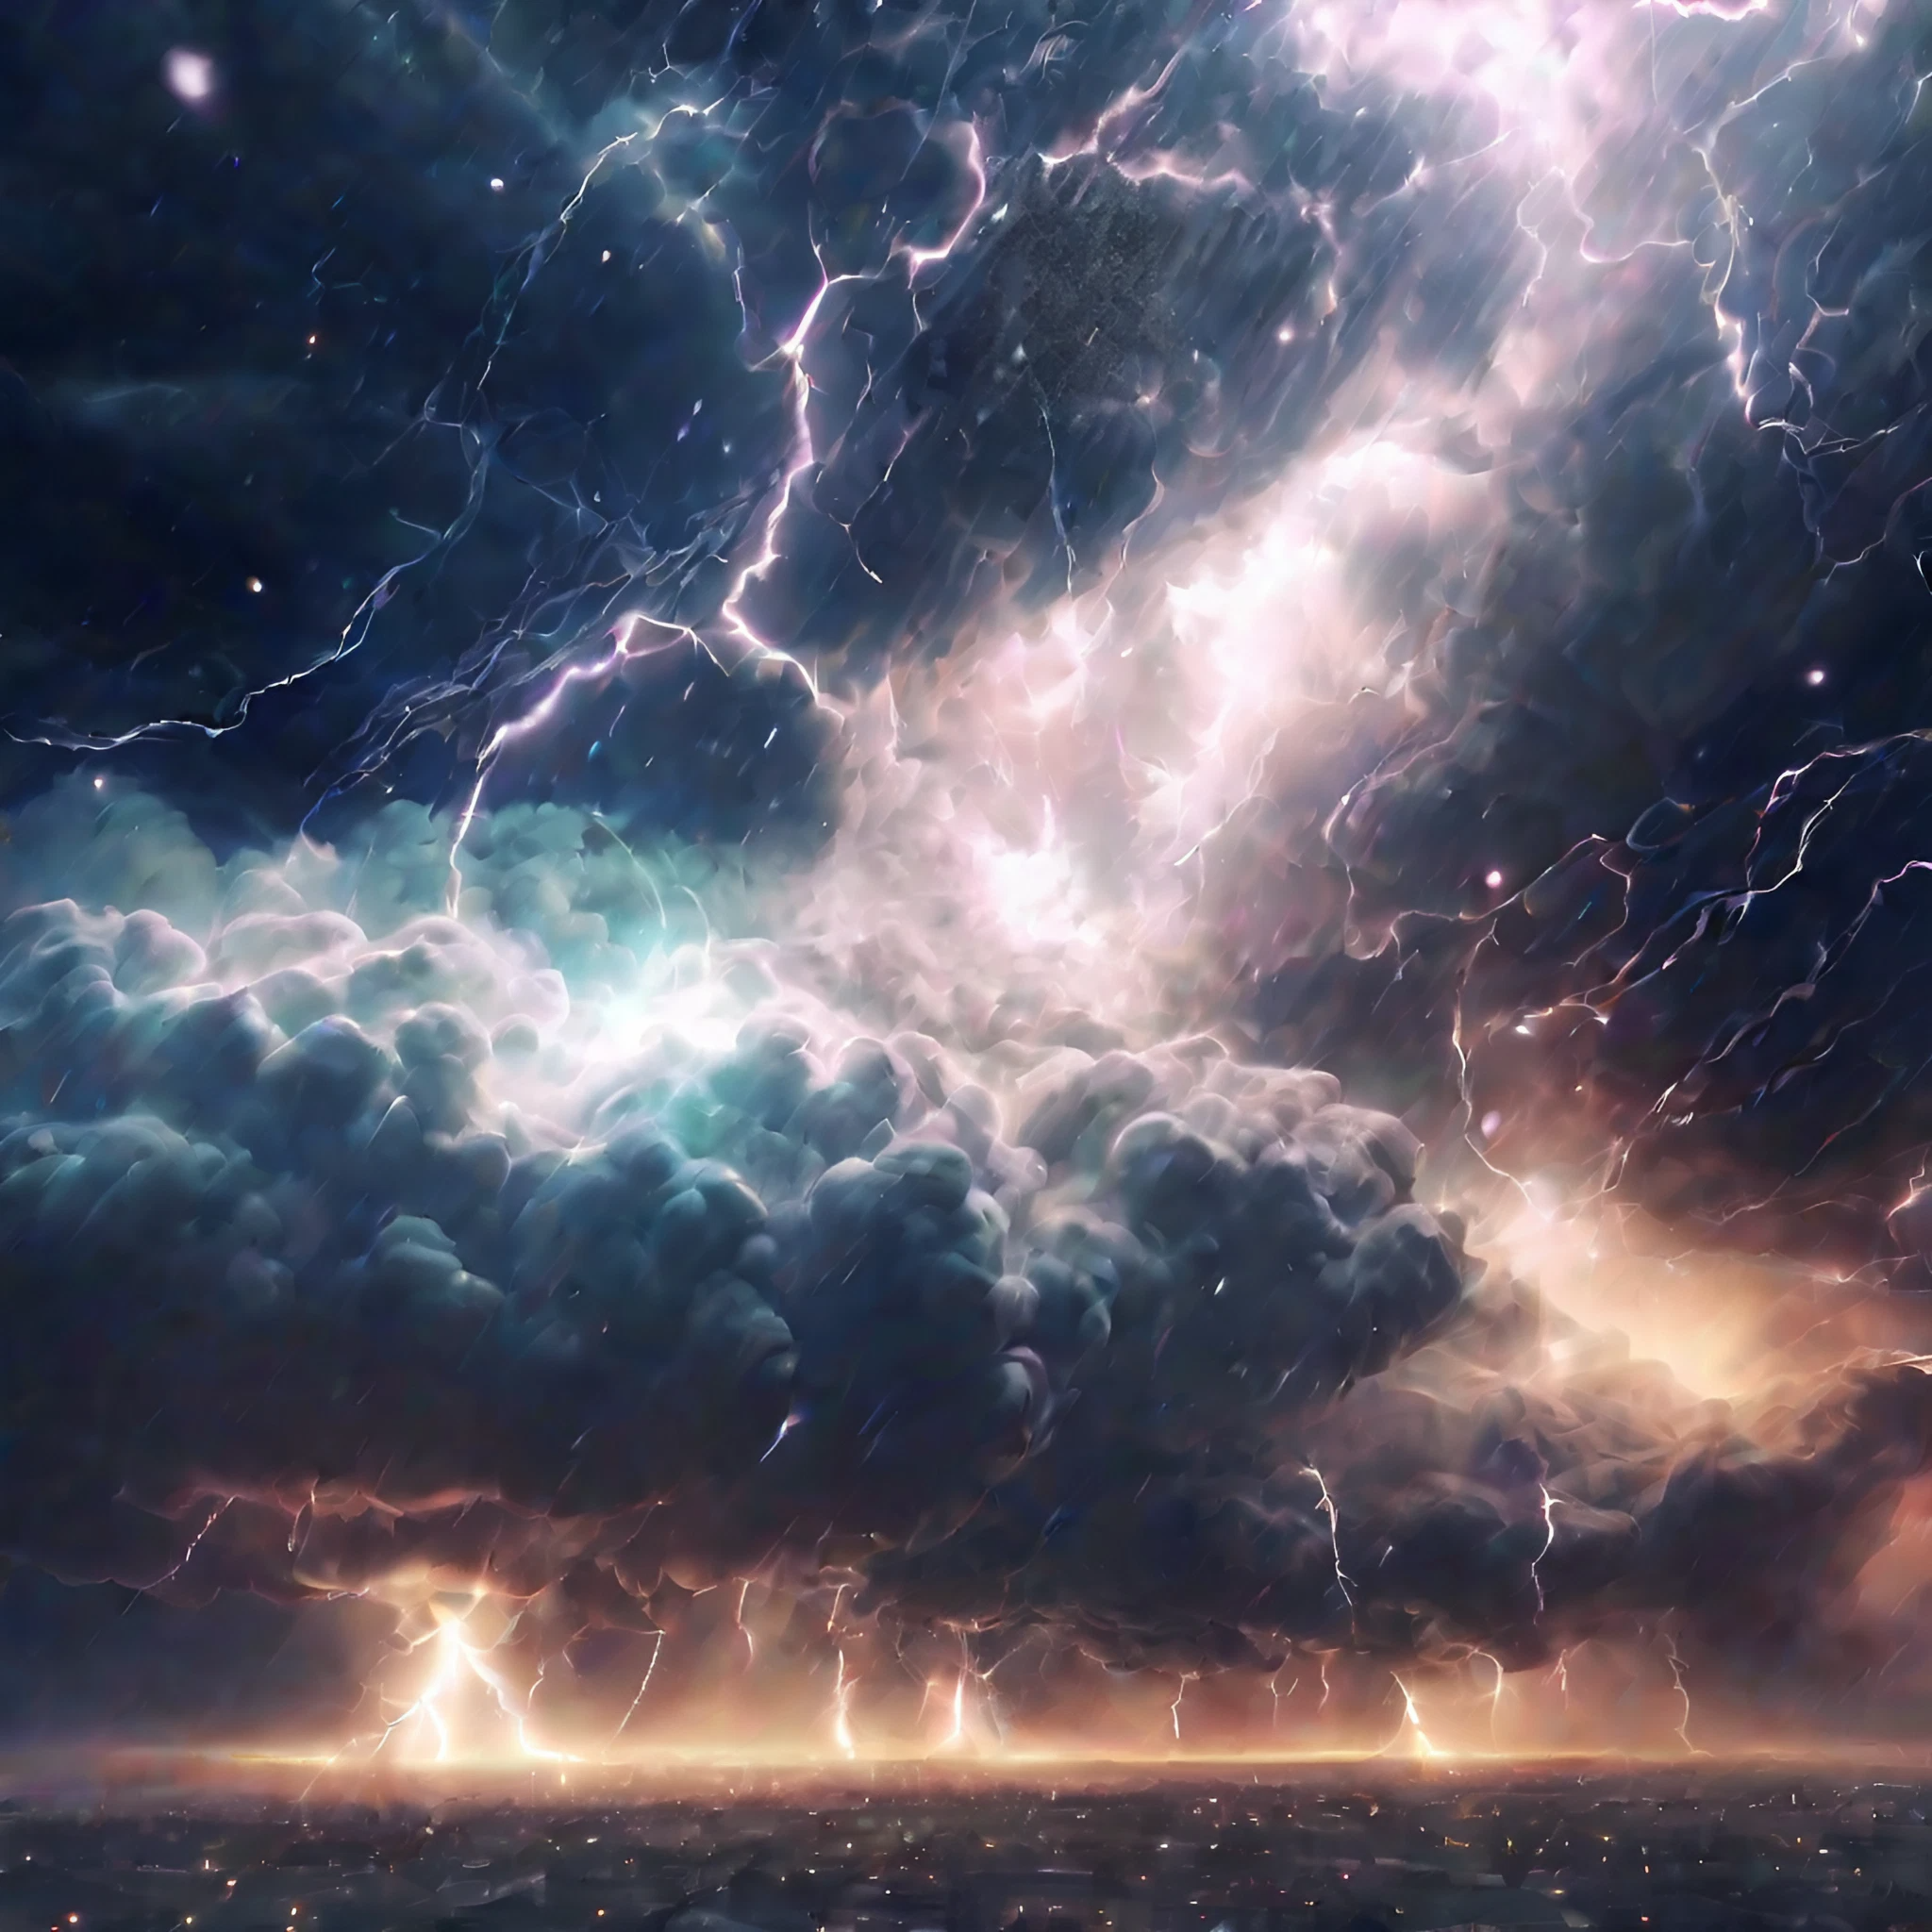 かっこいい雷と嵐の美しい明かりと夜空の無料リアル写真風画像素材